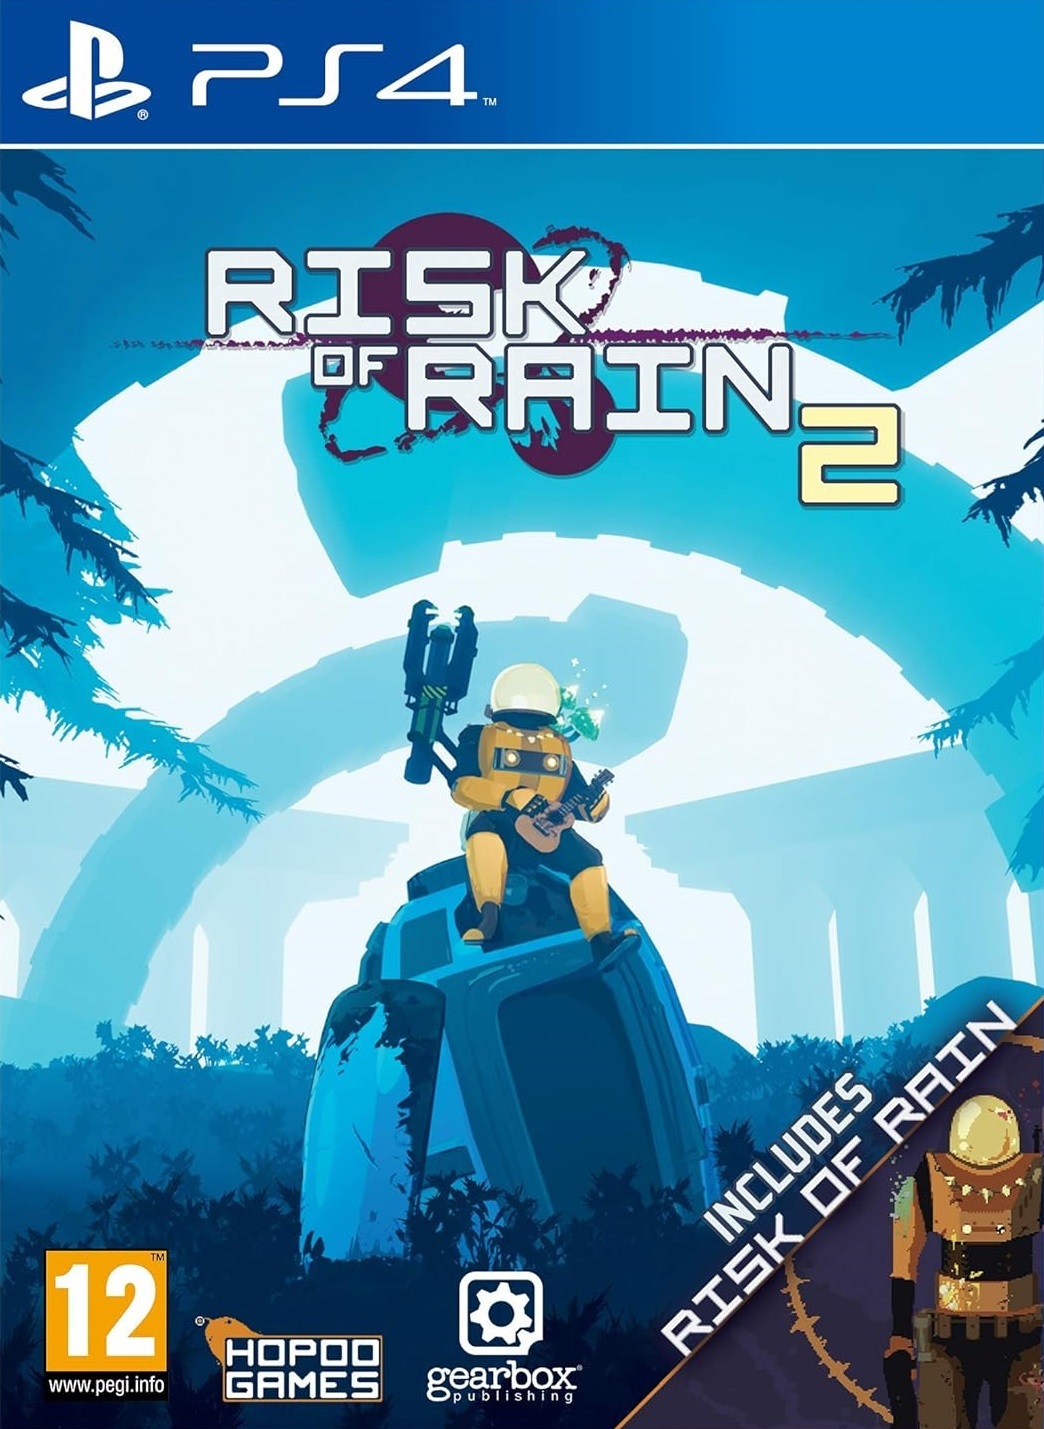 jaquette du jeu vidéo Risk of Rain 2